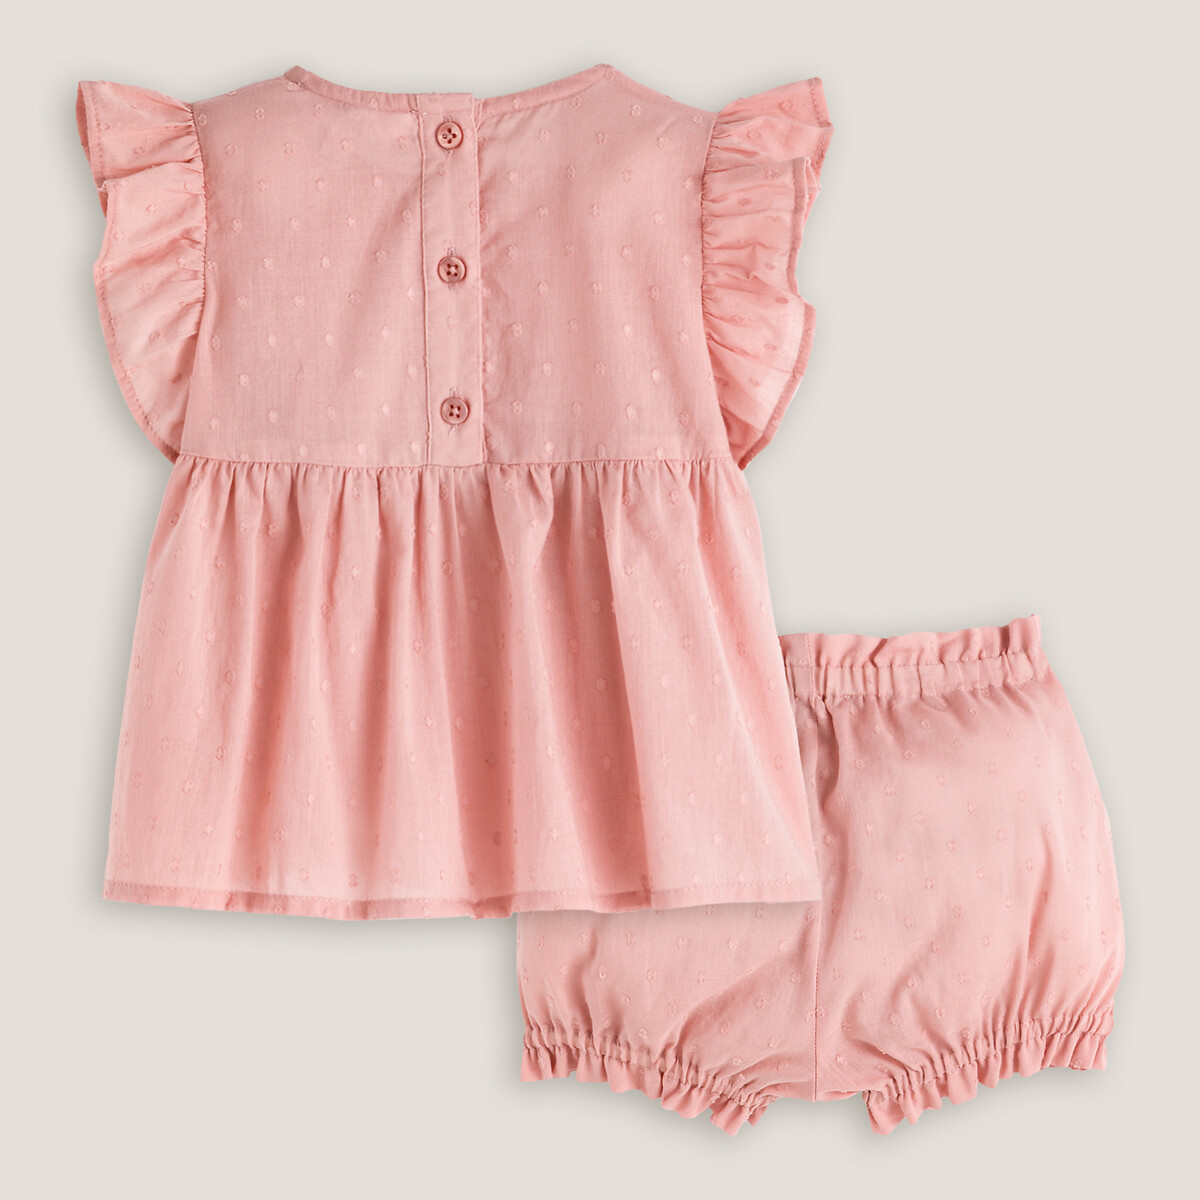 Комплект из 2 вещей из LA REDOUTE COLLECTIONS Блузки и шаровар с вышивкой гладью 1 год - 74 см розовый, размер 1 - фото 2